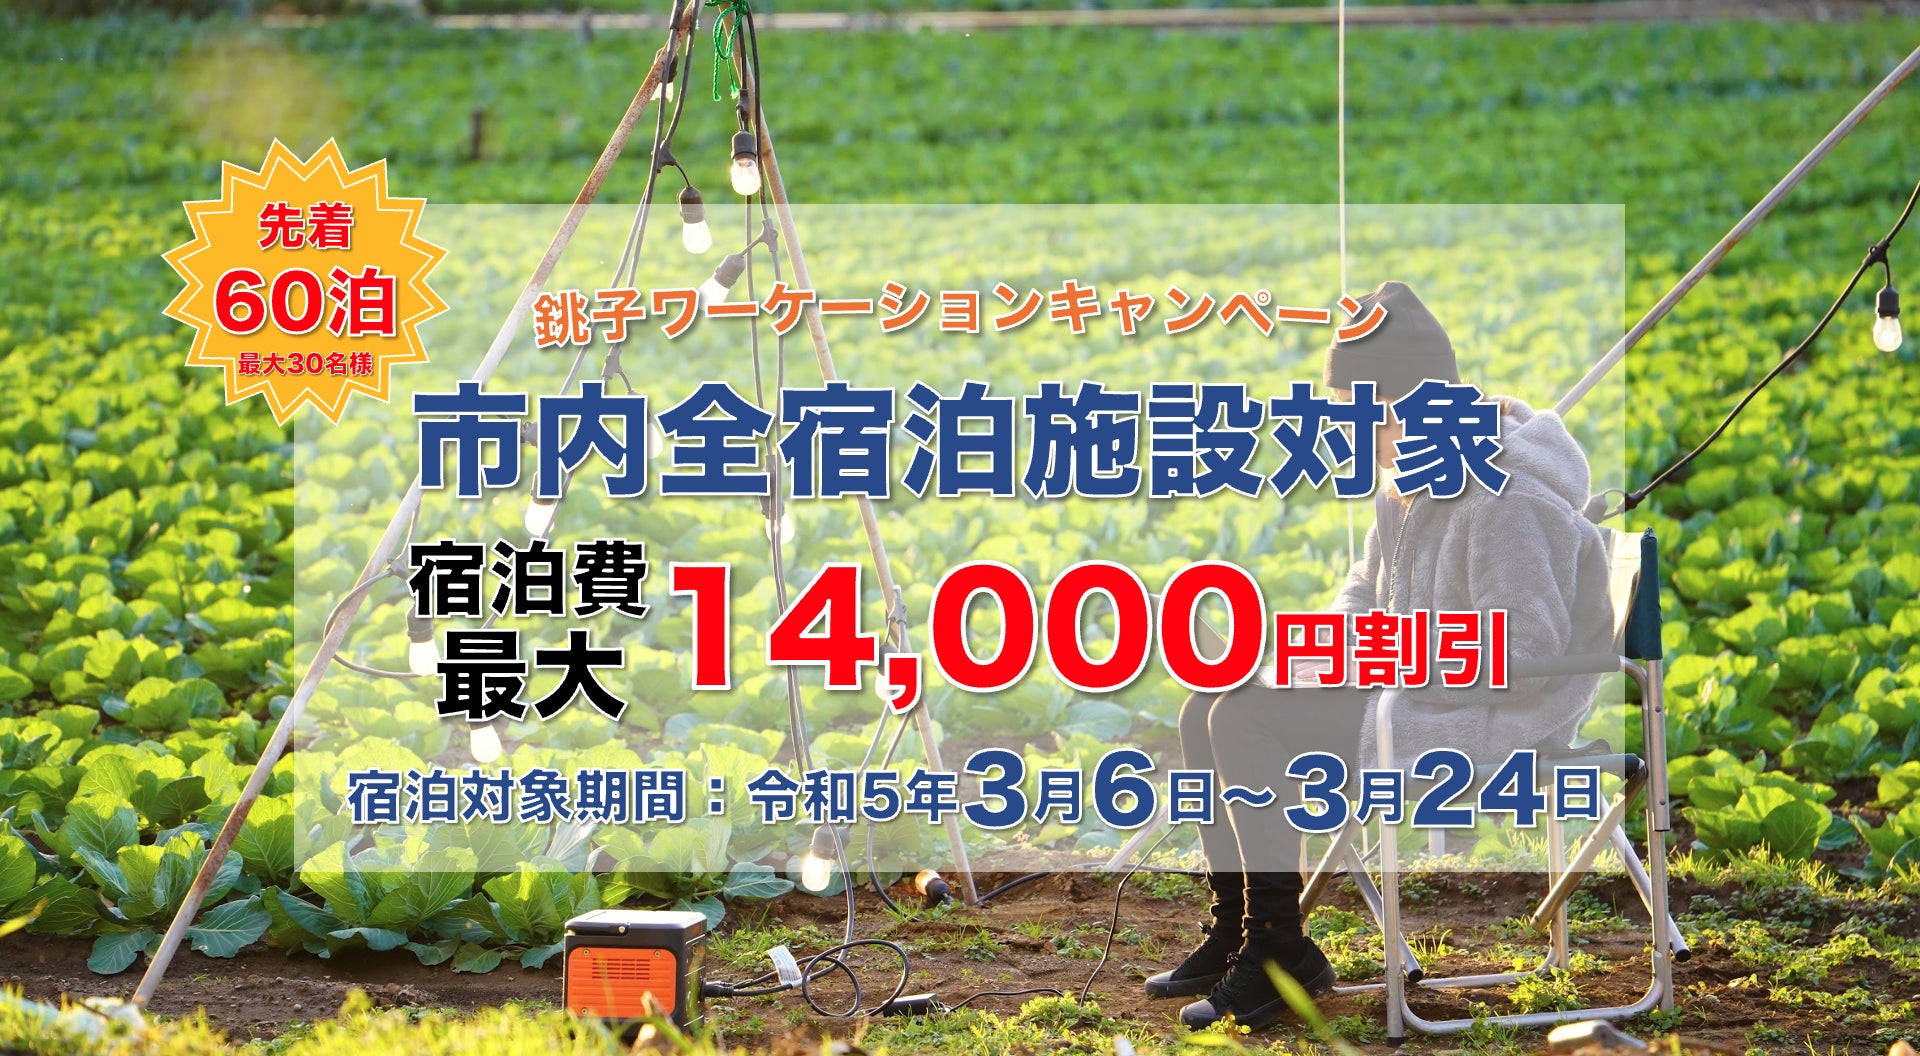 14,000円がもらえる宿泊キャンペーン！3/6から3/24までの期間、銚子市でワーケーションしませんか？